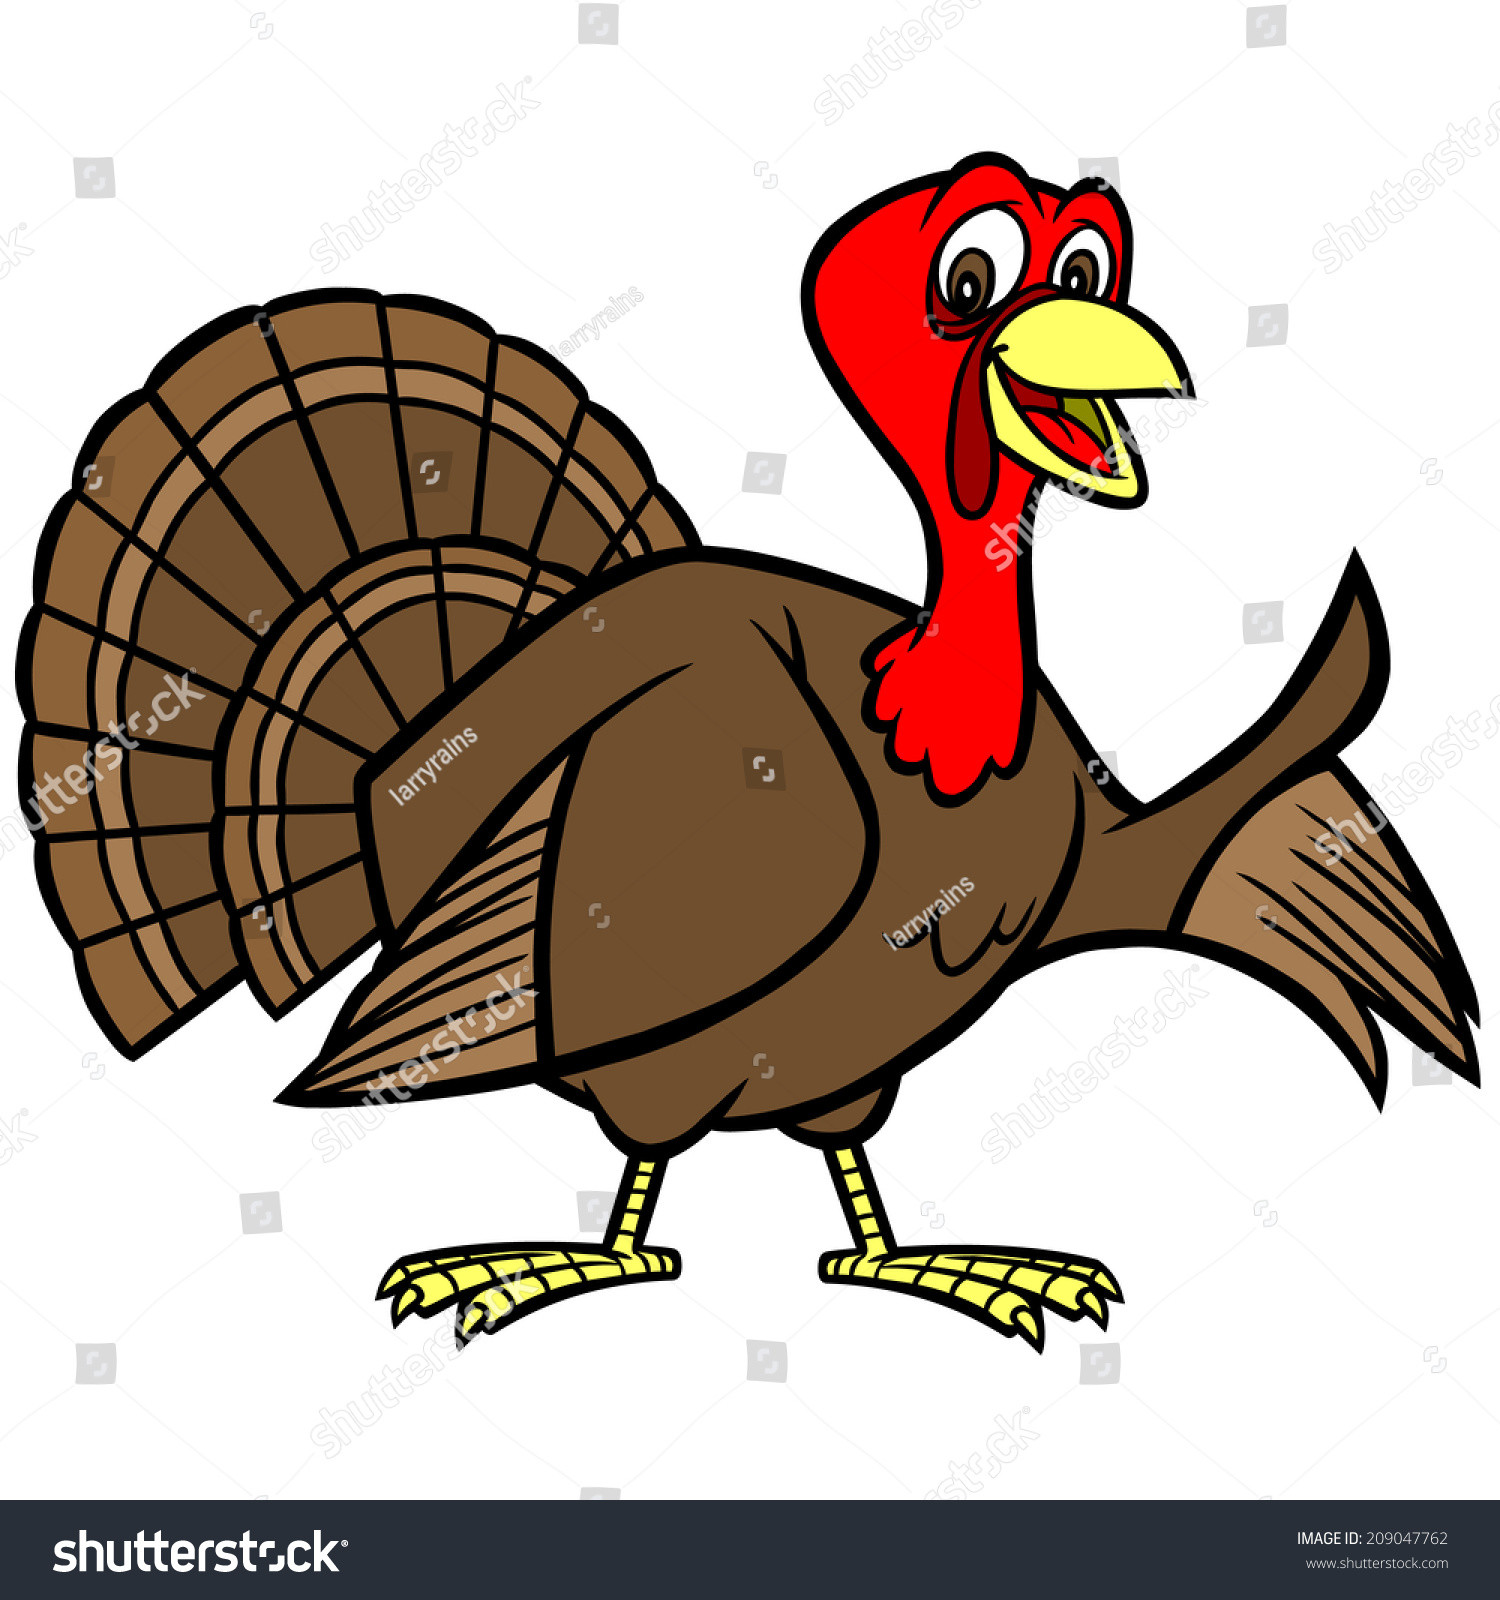 Thanksgiving Turkey Vector
 Thanksgiving Turkey Stock Vector Illustration